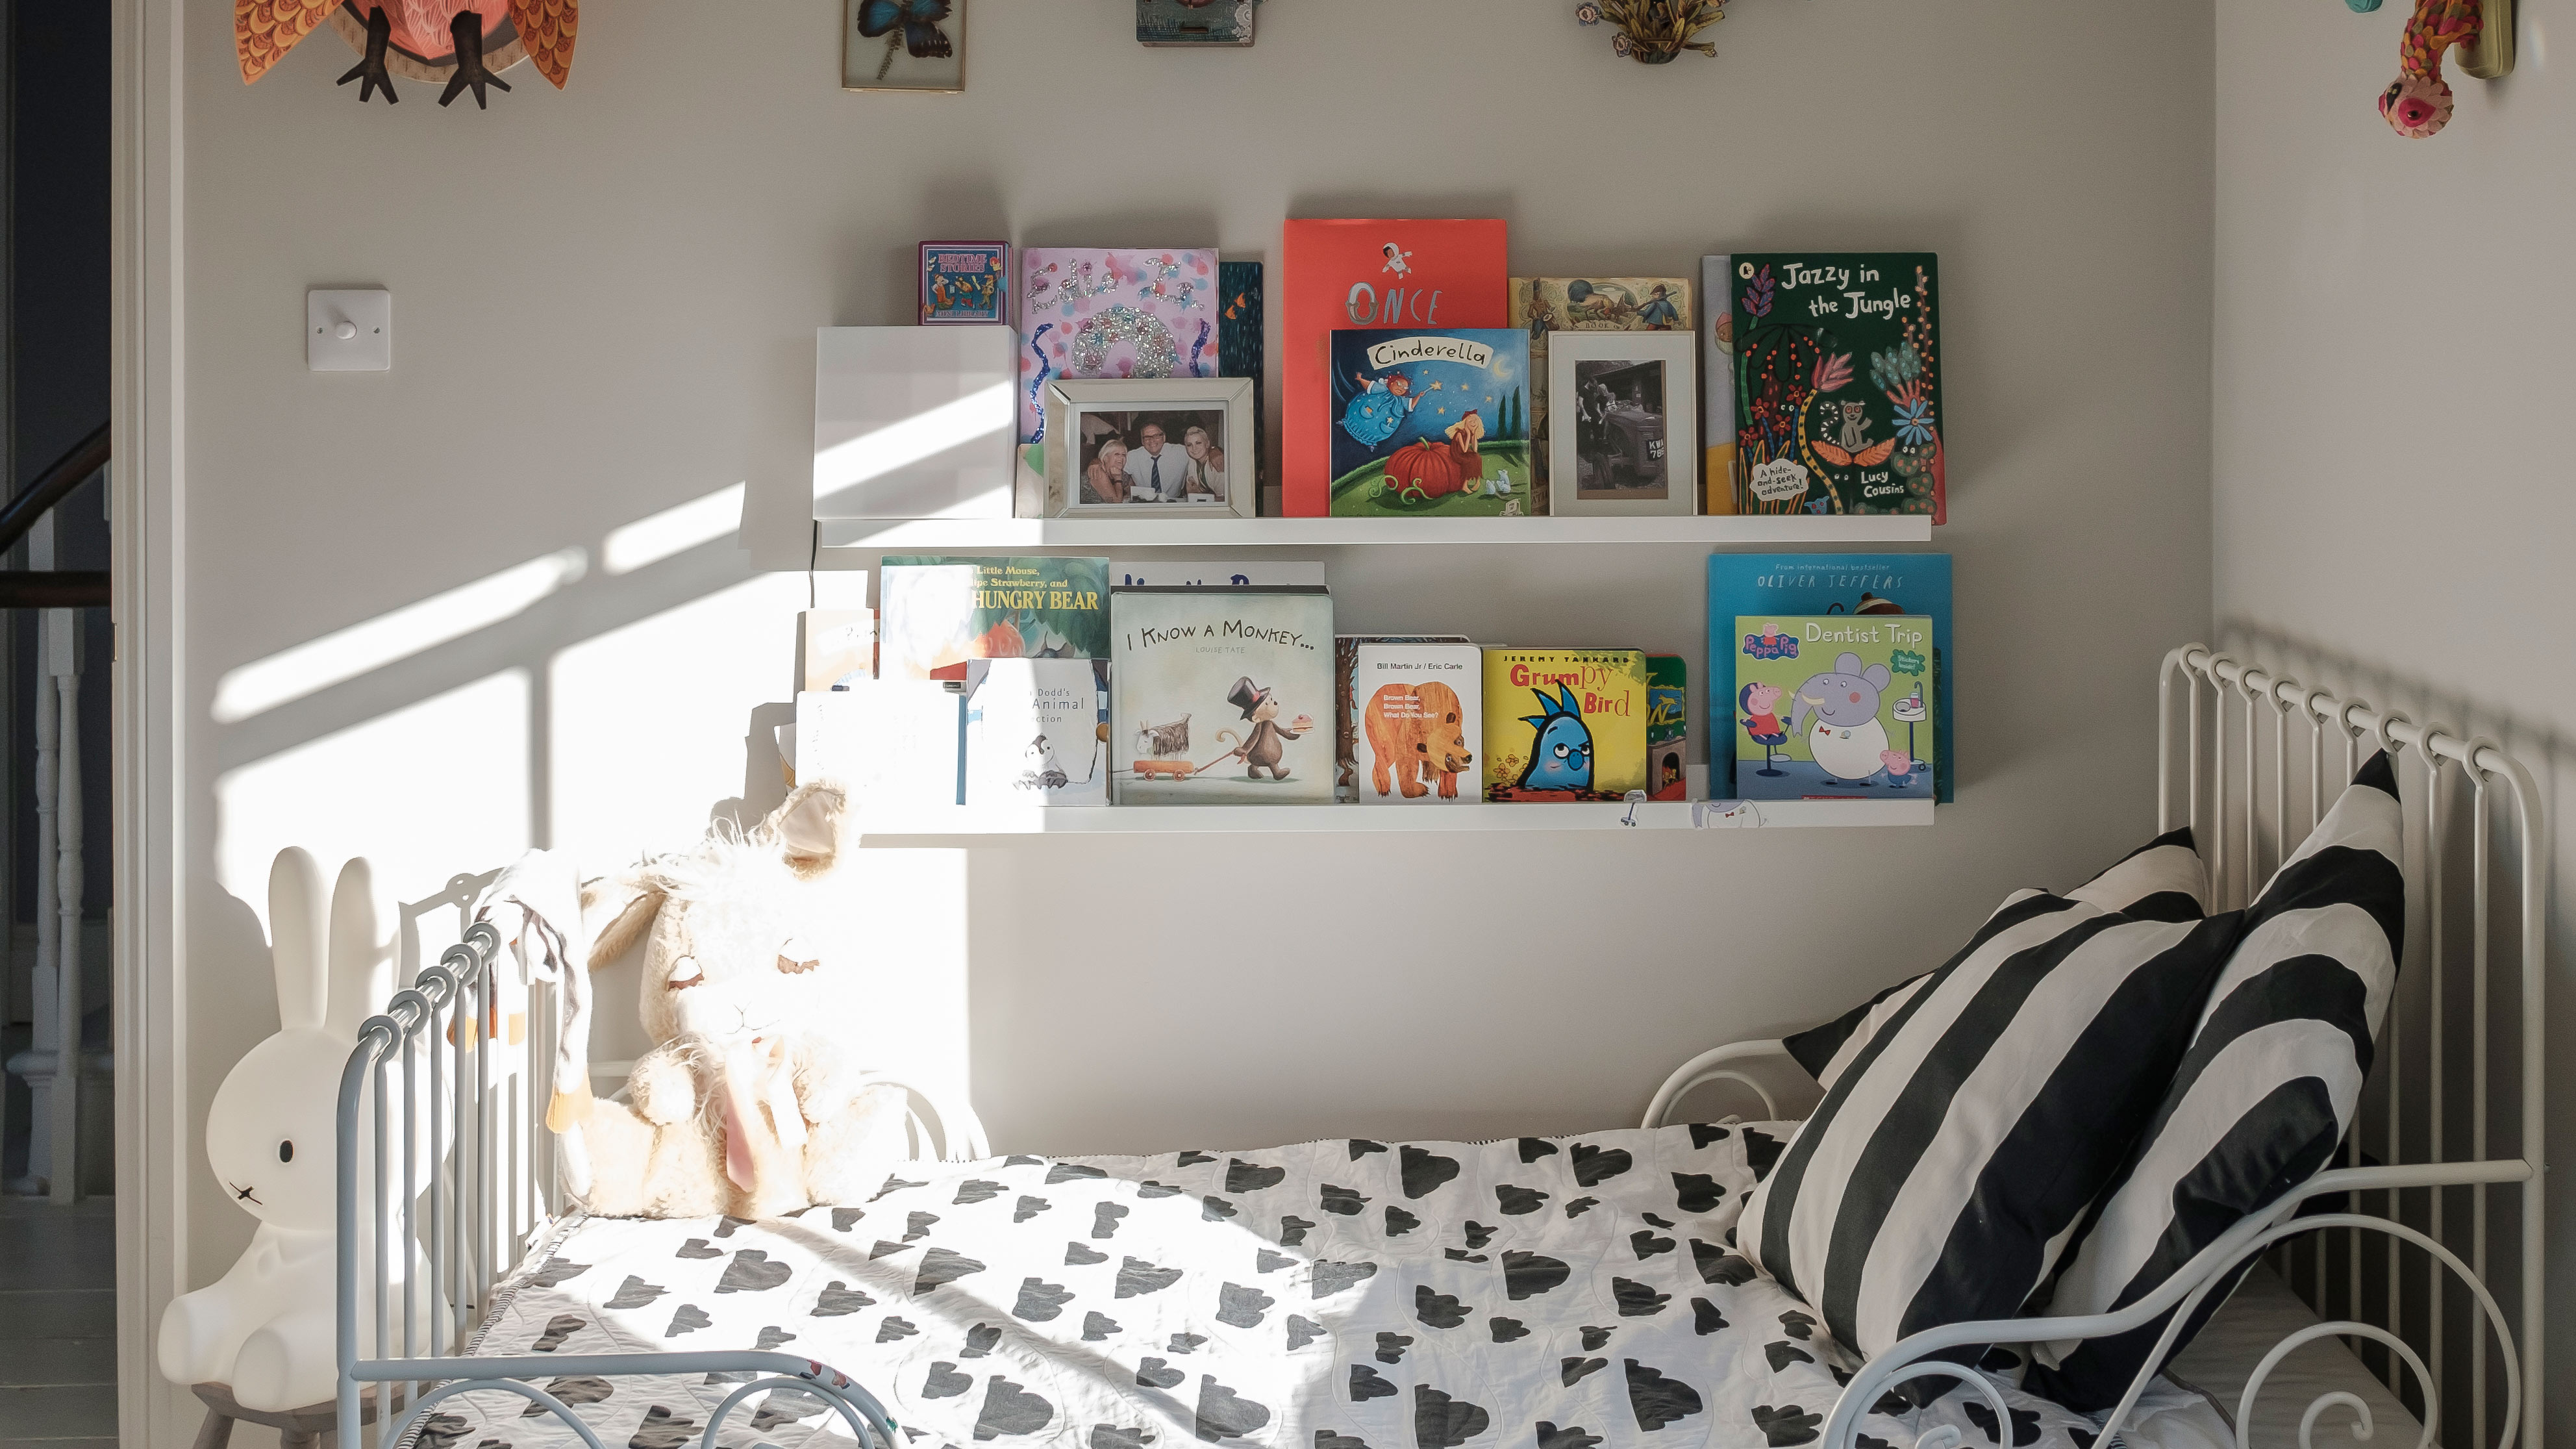 33 kids' room ideas – fresh looks for a modern yet whimsical bedroom |  Livingetc |